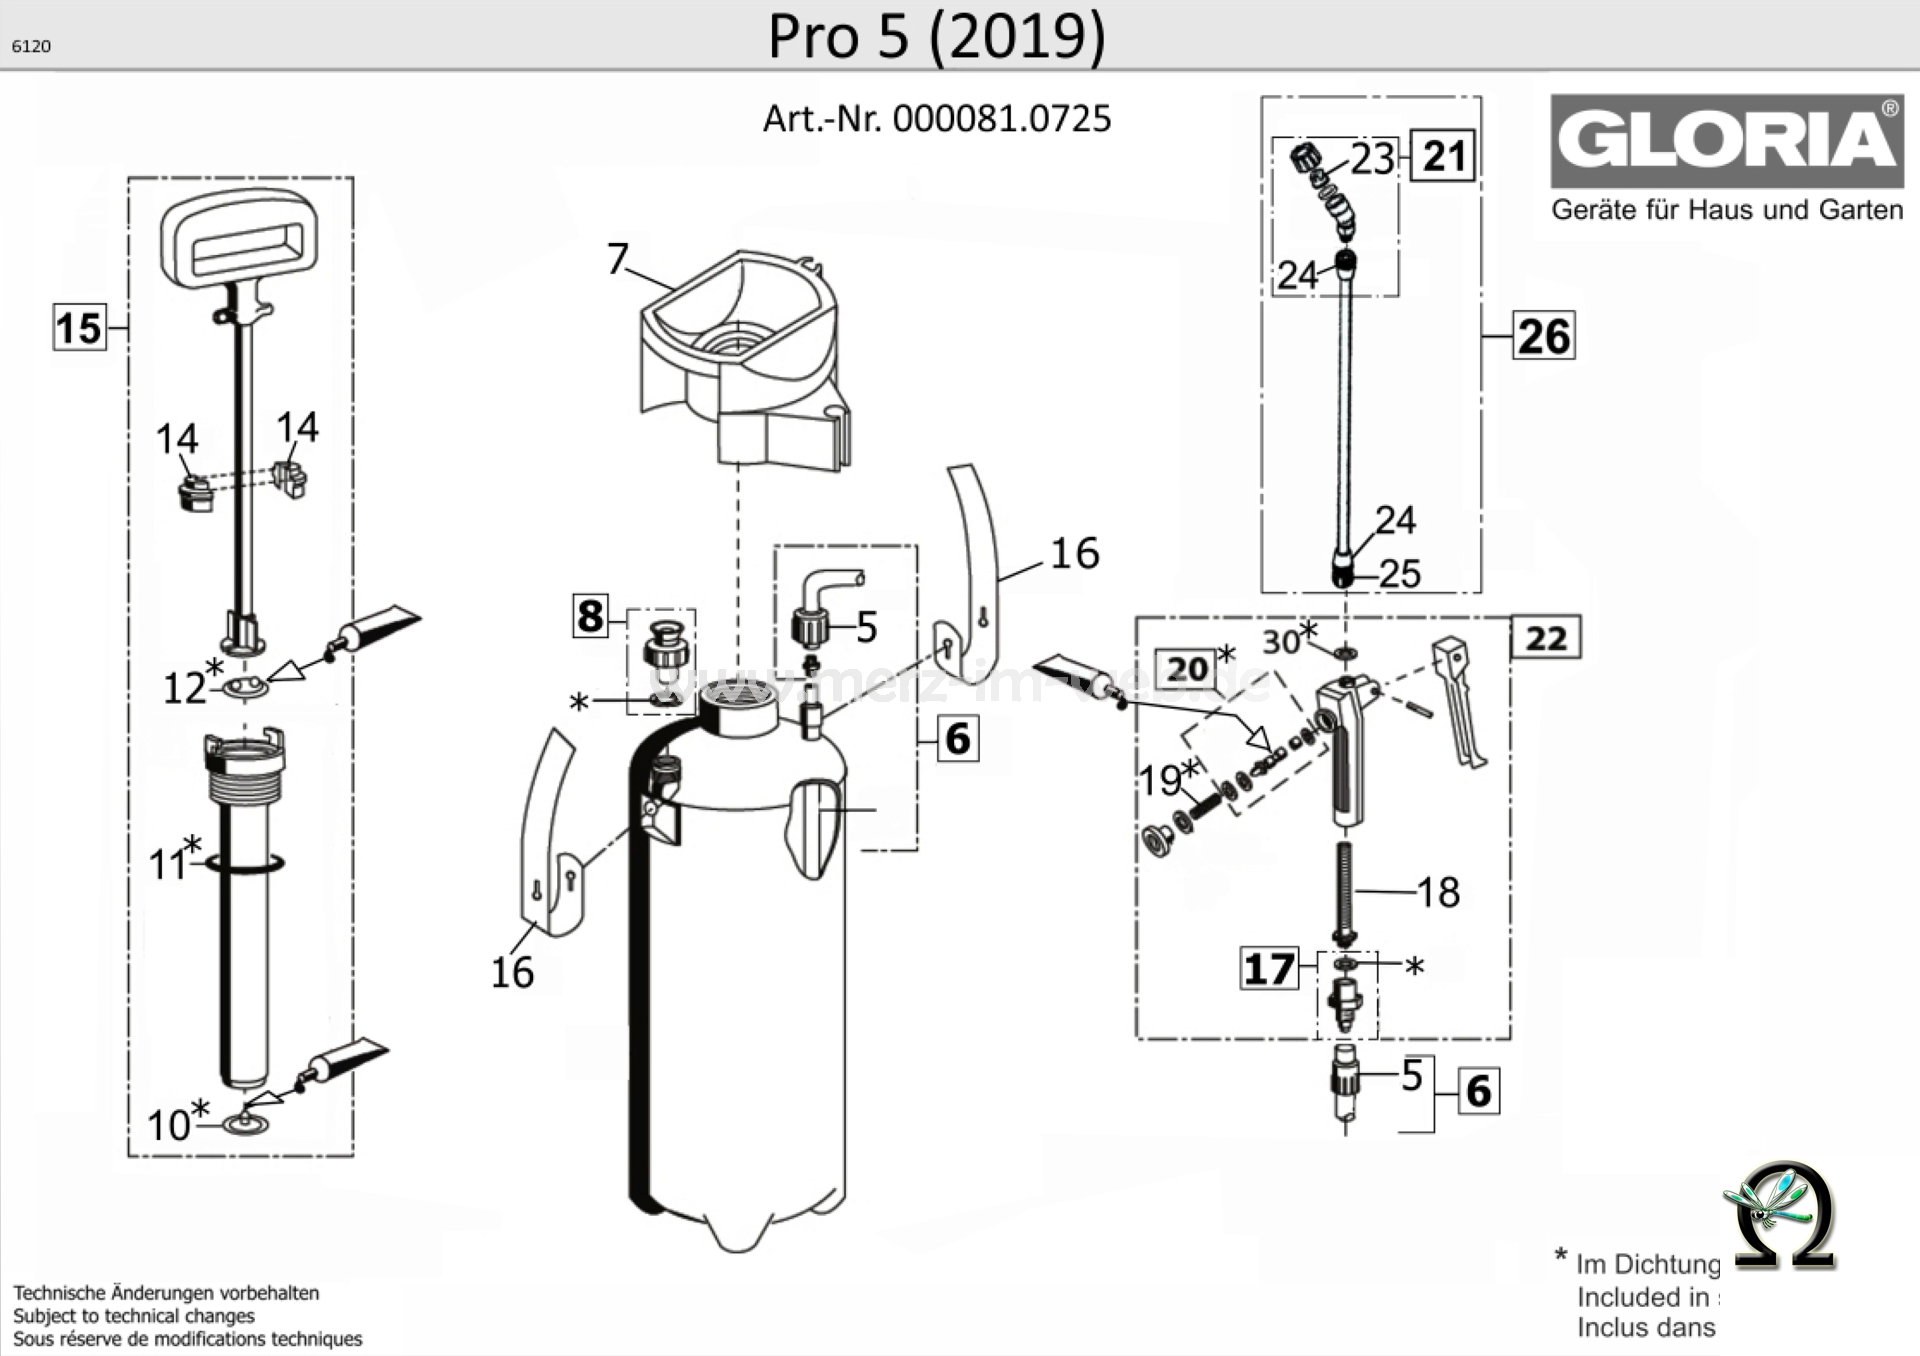 Drucksprühgerät Gloria Pro 5 ab 2019, Zeichnung der Einzelteile